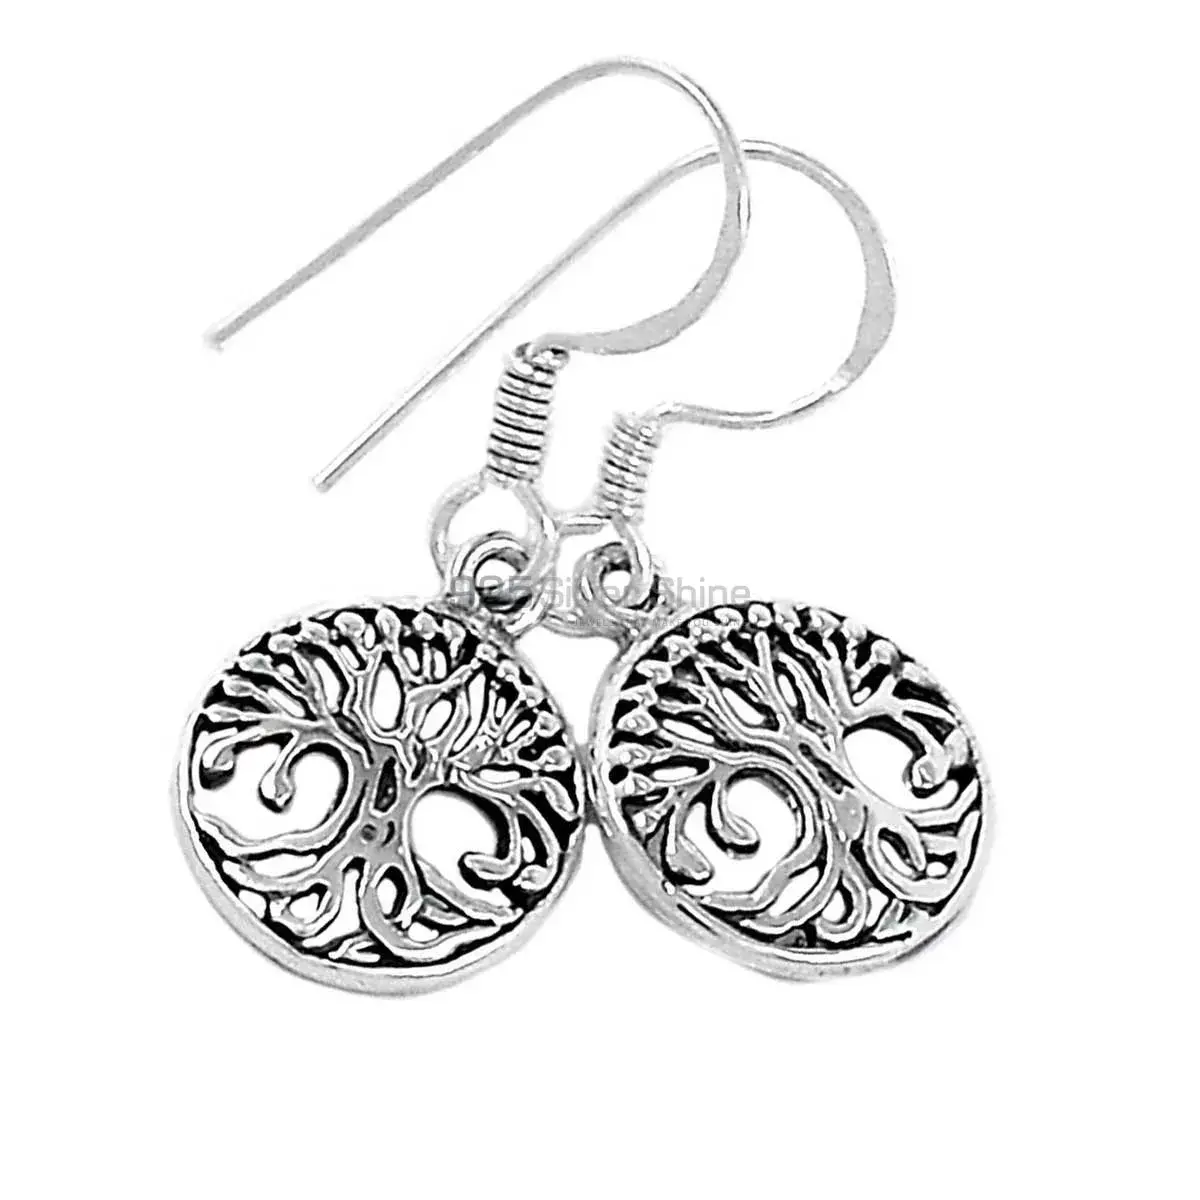 Life Of Tree Design Earrings In Fine 925 Sterling Silver 925SE2900_3